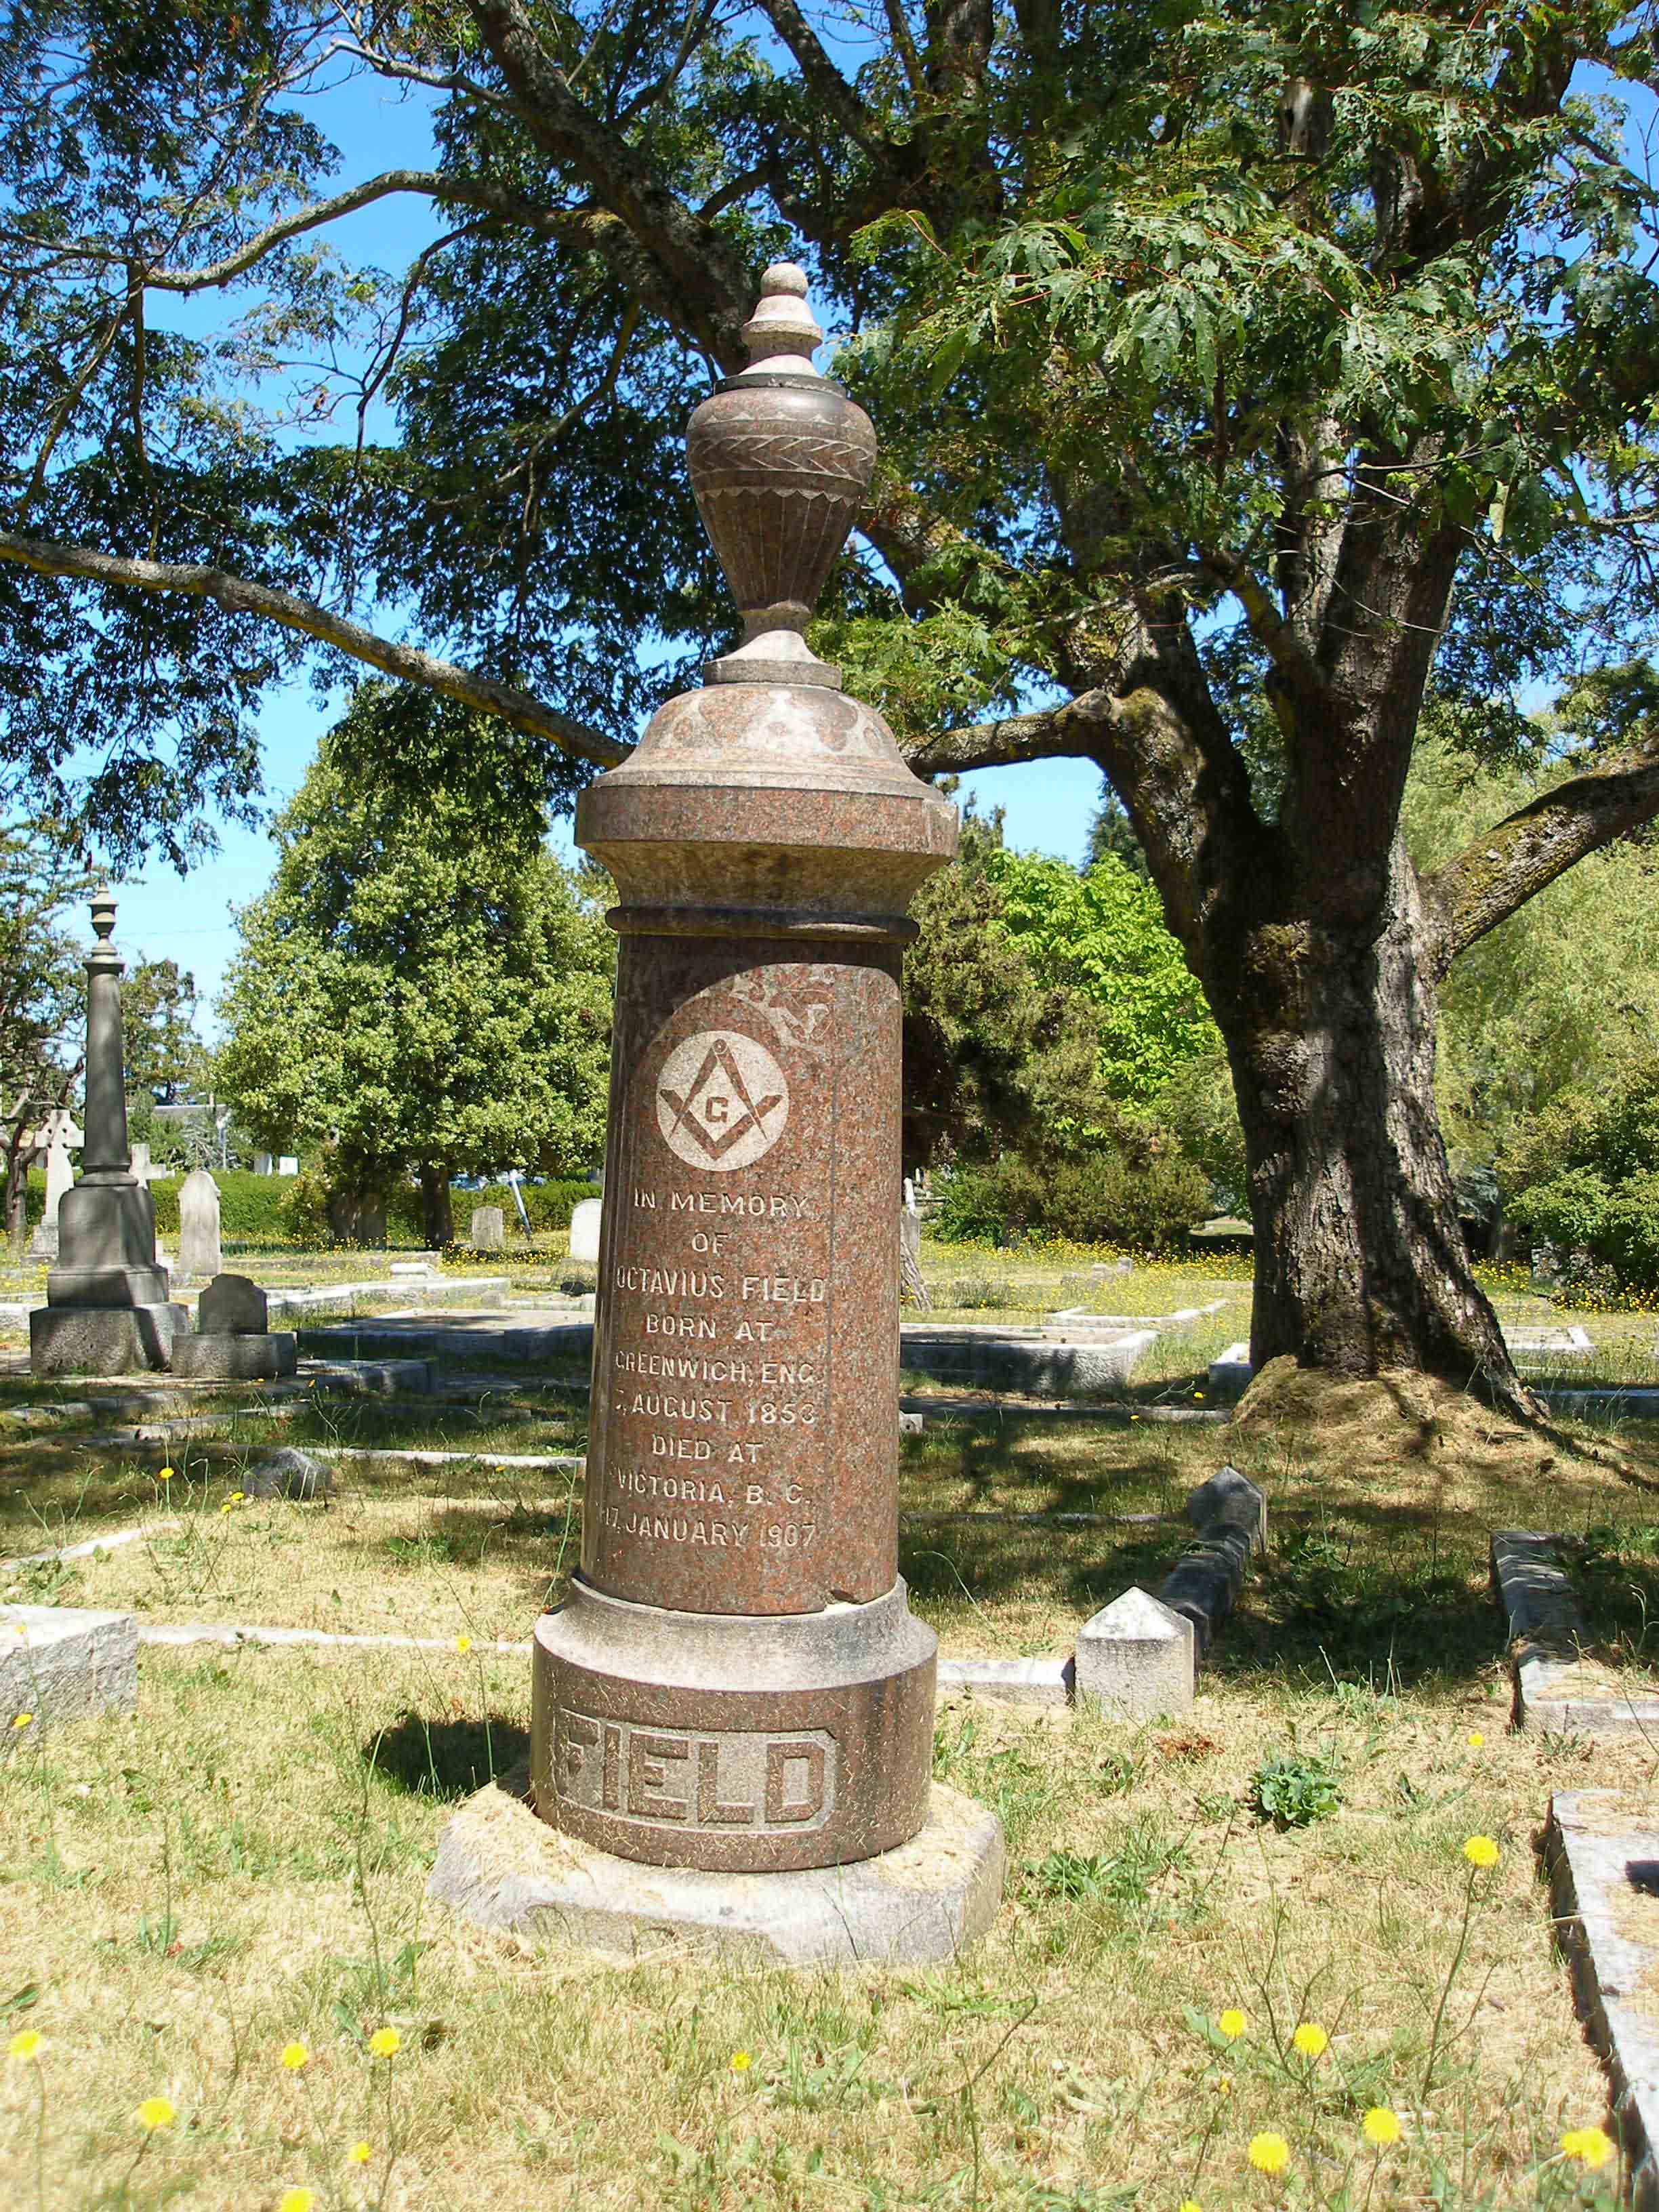 Octavius Field grave marker